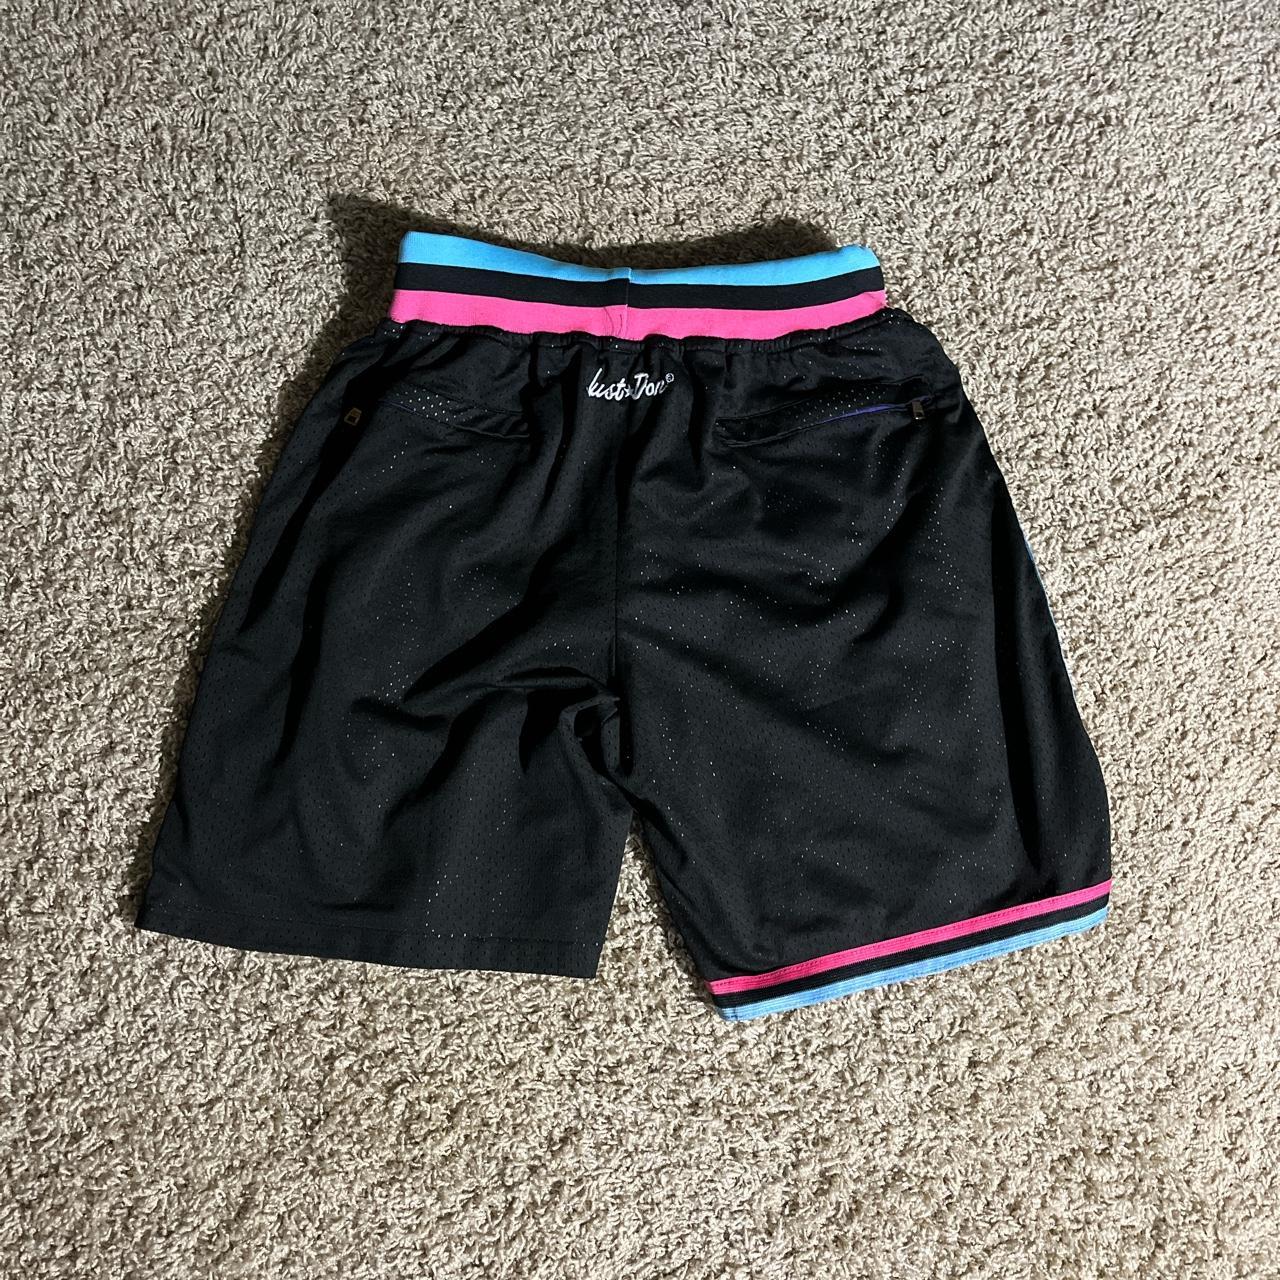 Just Don Men's Shorts - Multi - M